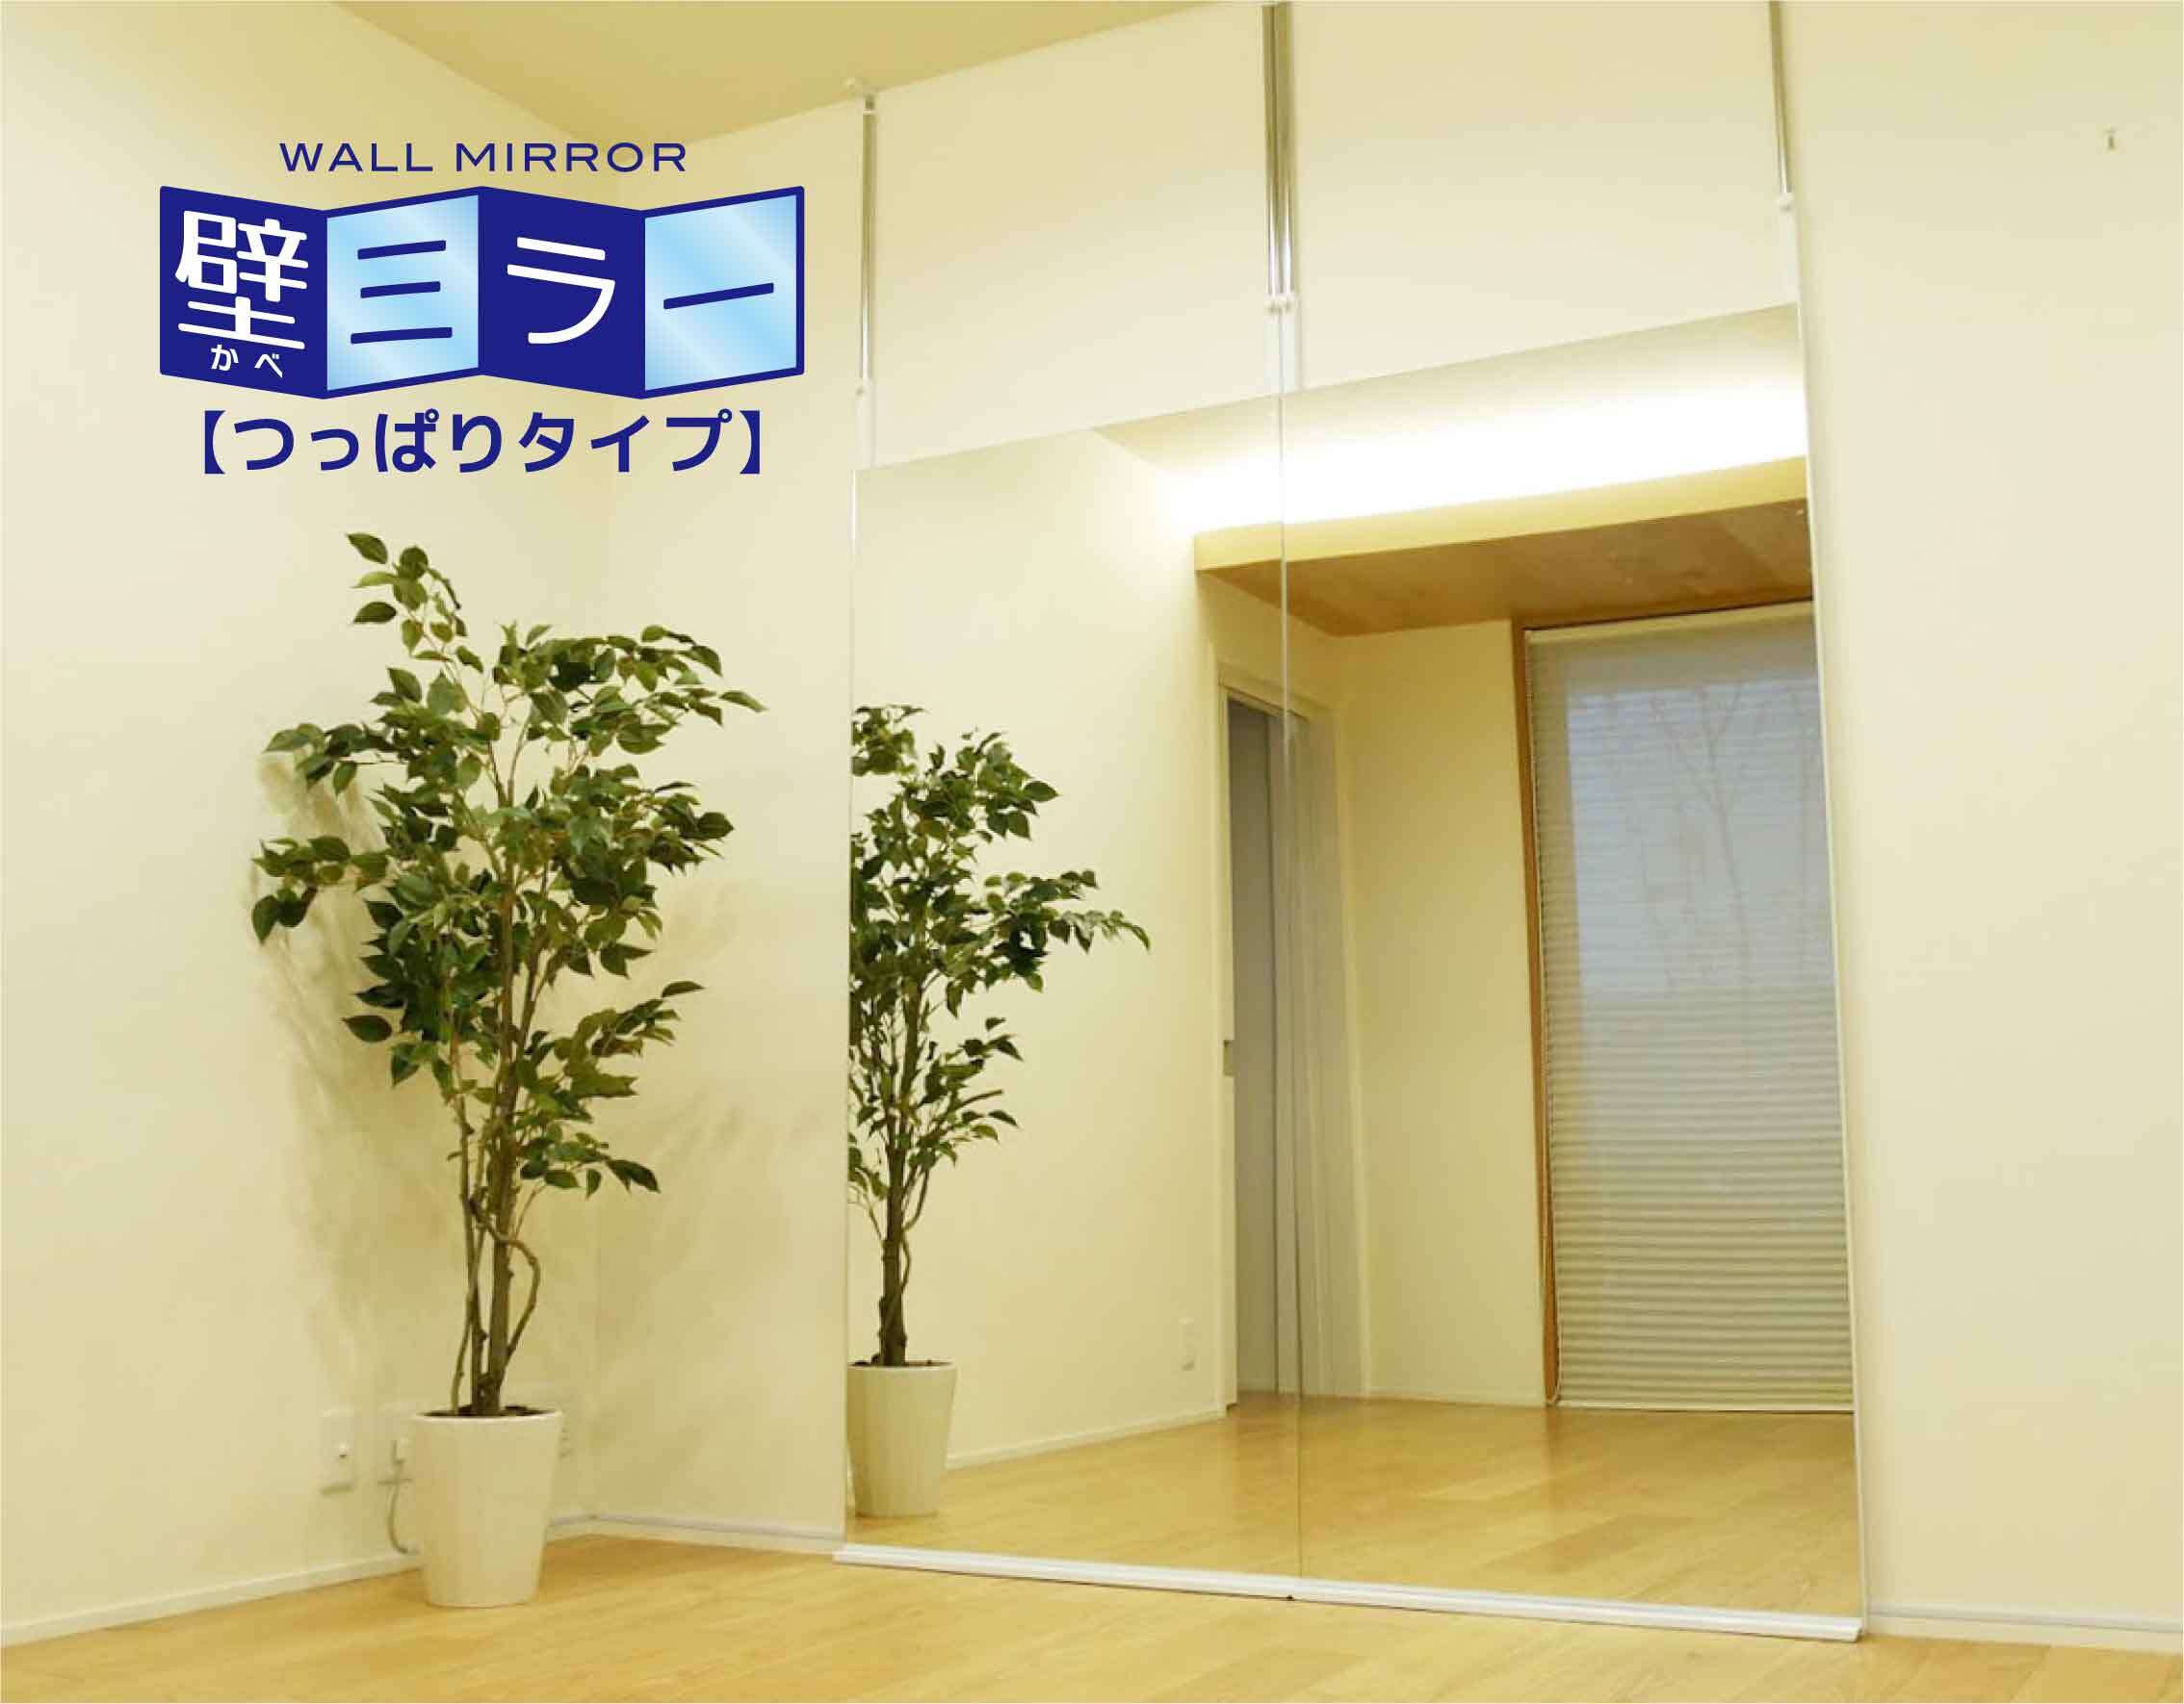 鏡の販売 Comから壁ミラー つっぱりタイプ 12月26日発売 壁の穴開け不要で持ち家 賃貸問わず使える 大壁商事株式会社のプレスリリース